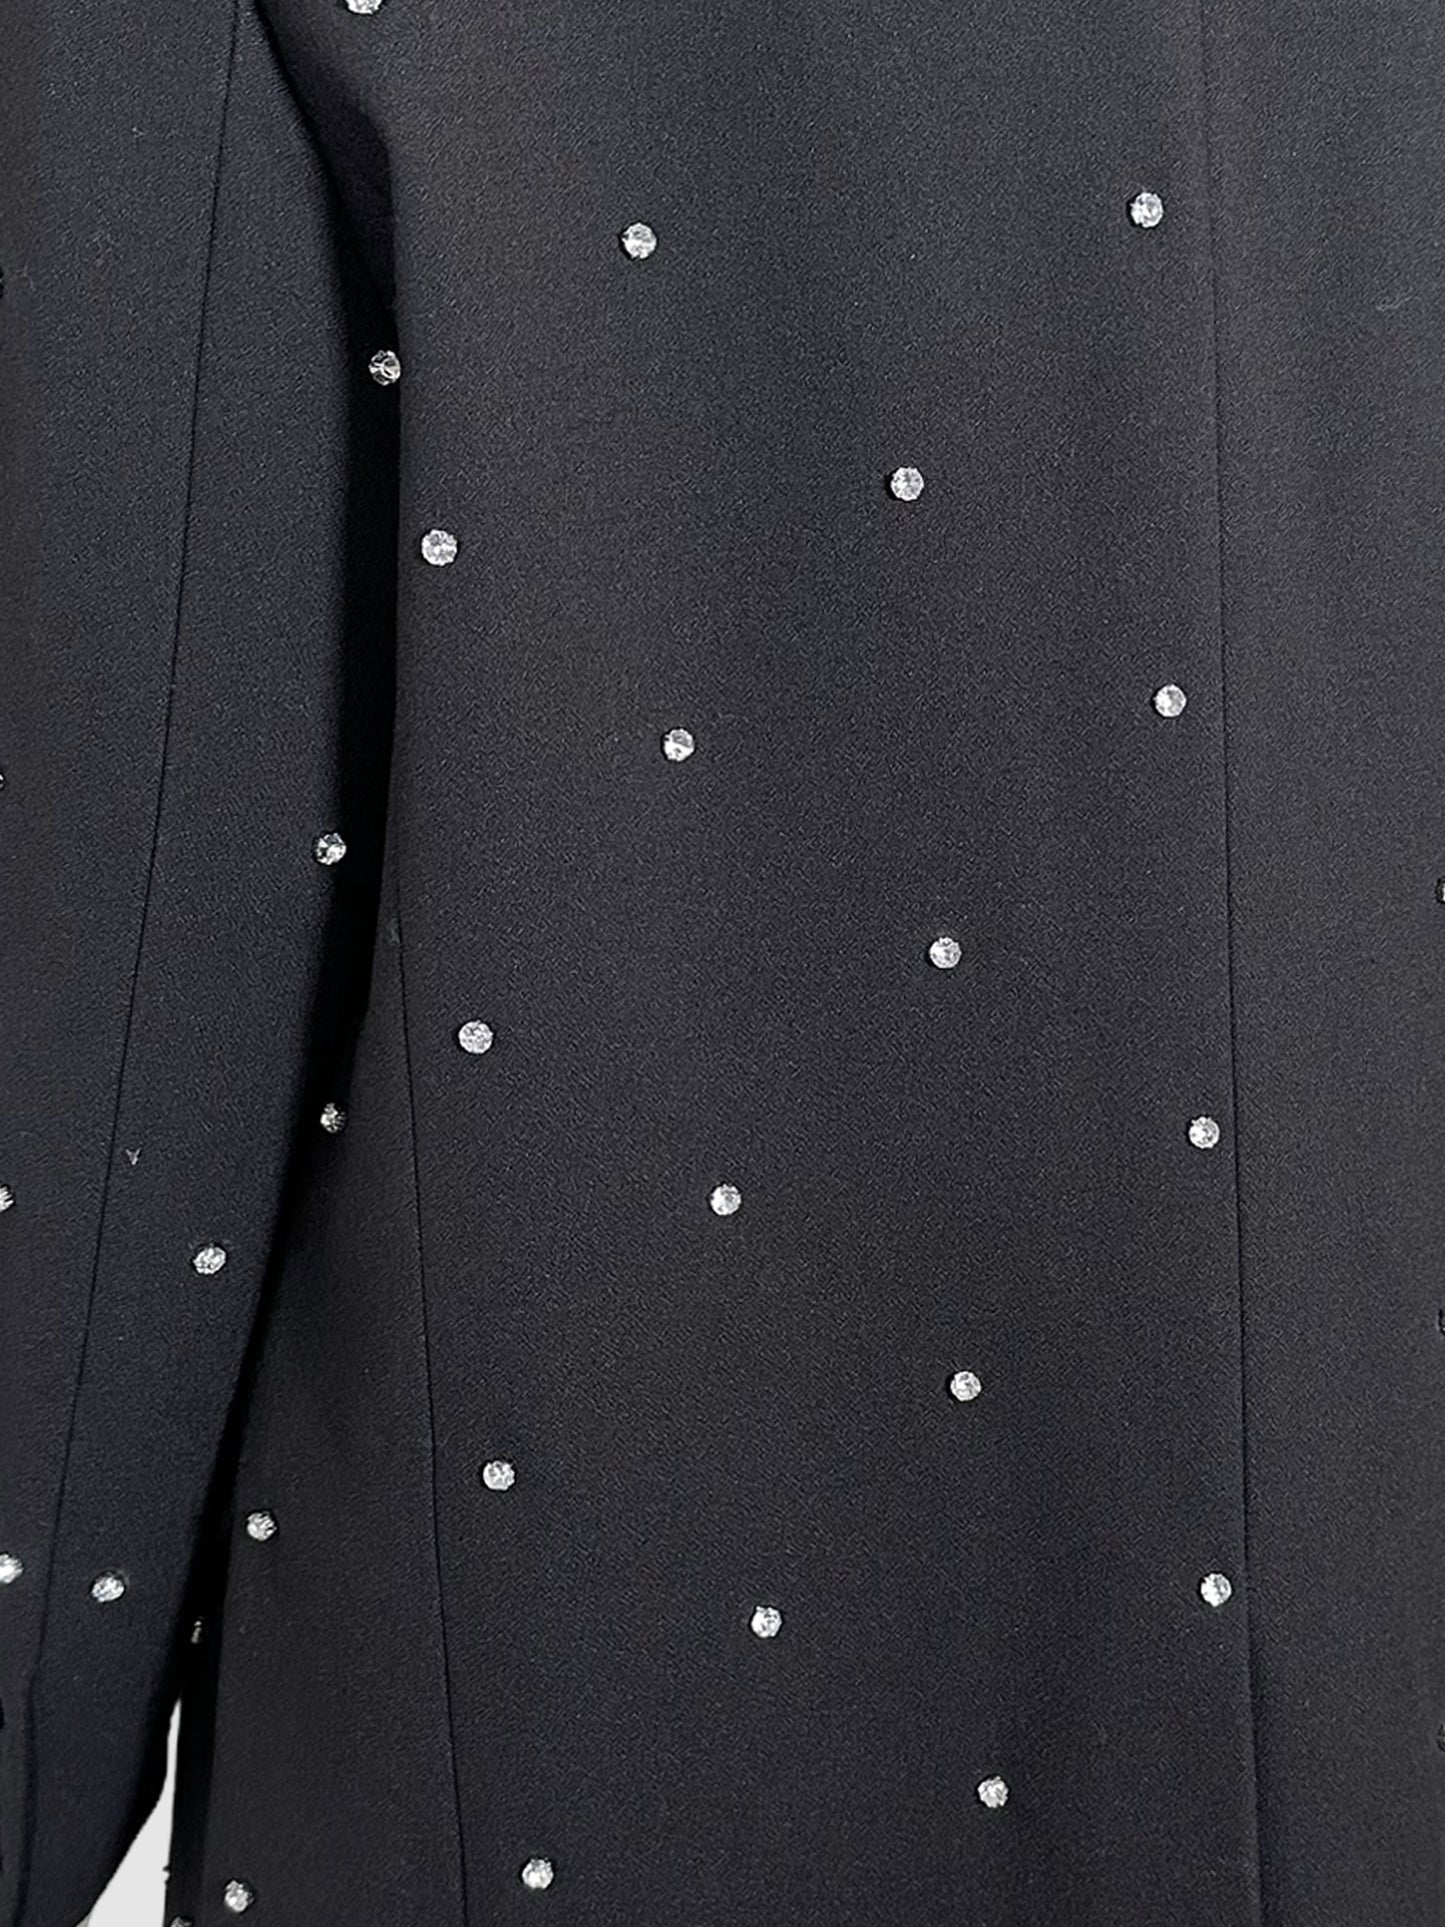 Michael Kors Crystal Embellished Blazer - Size 14